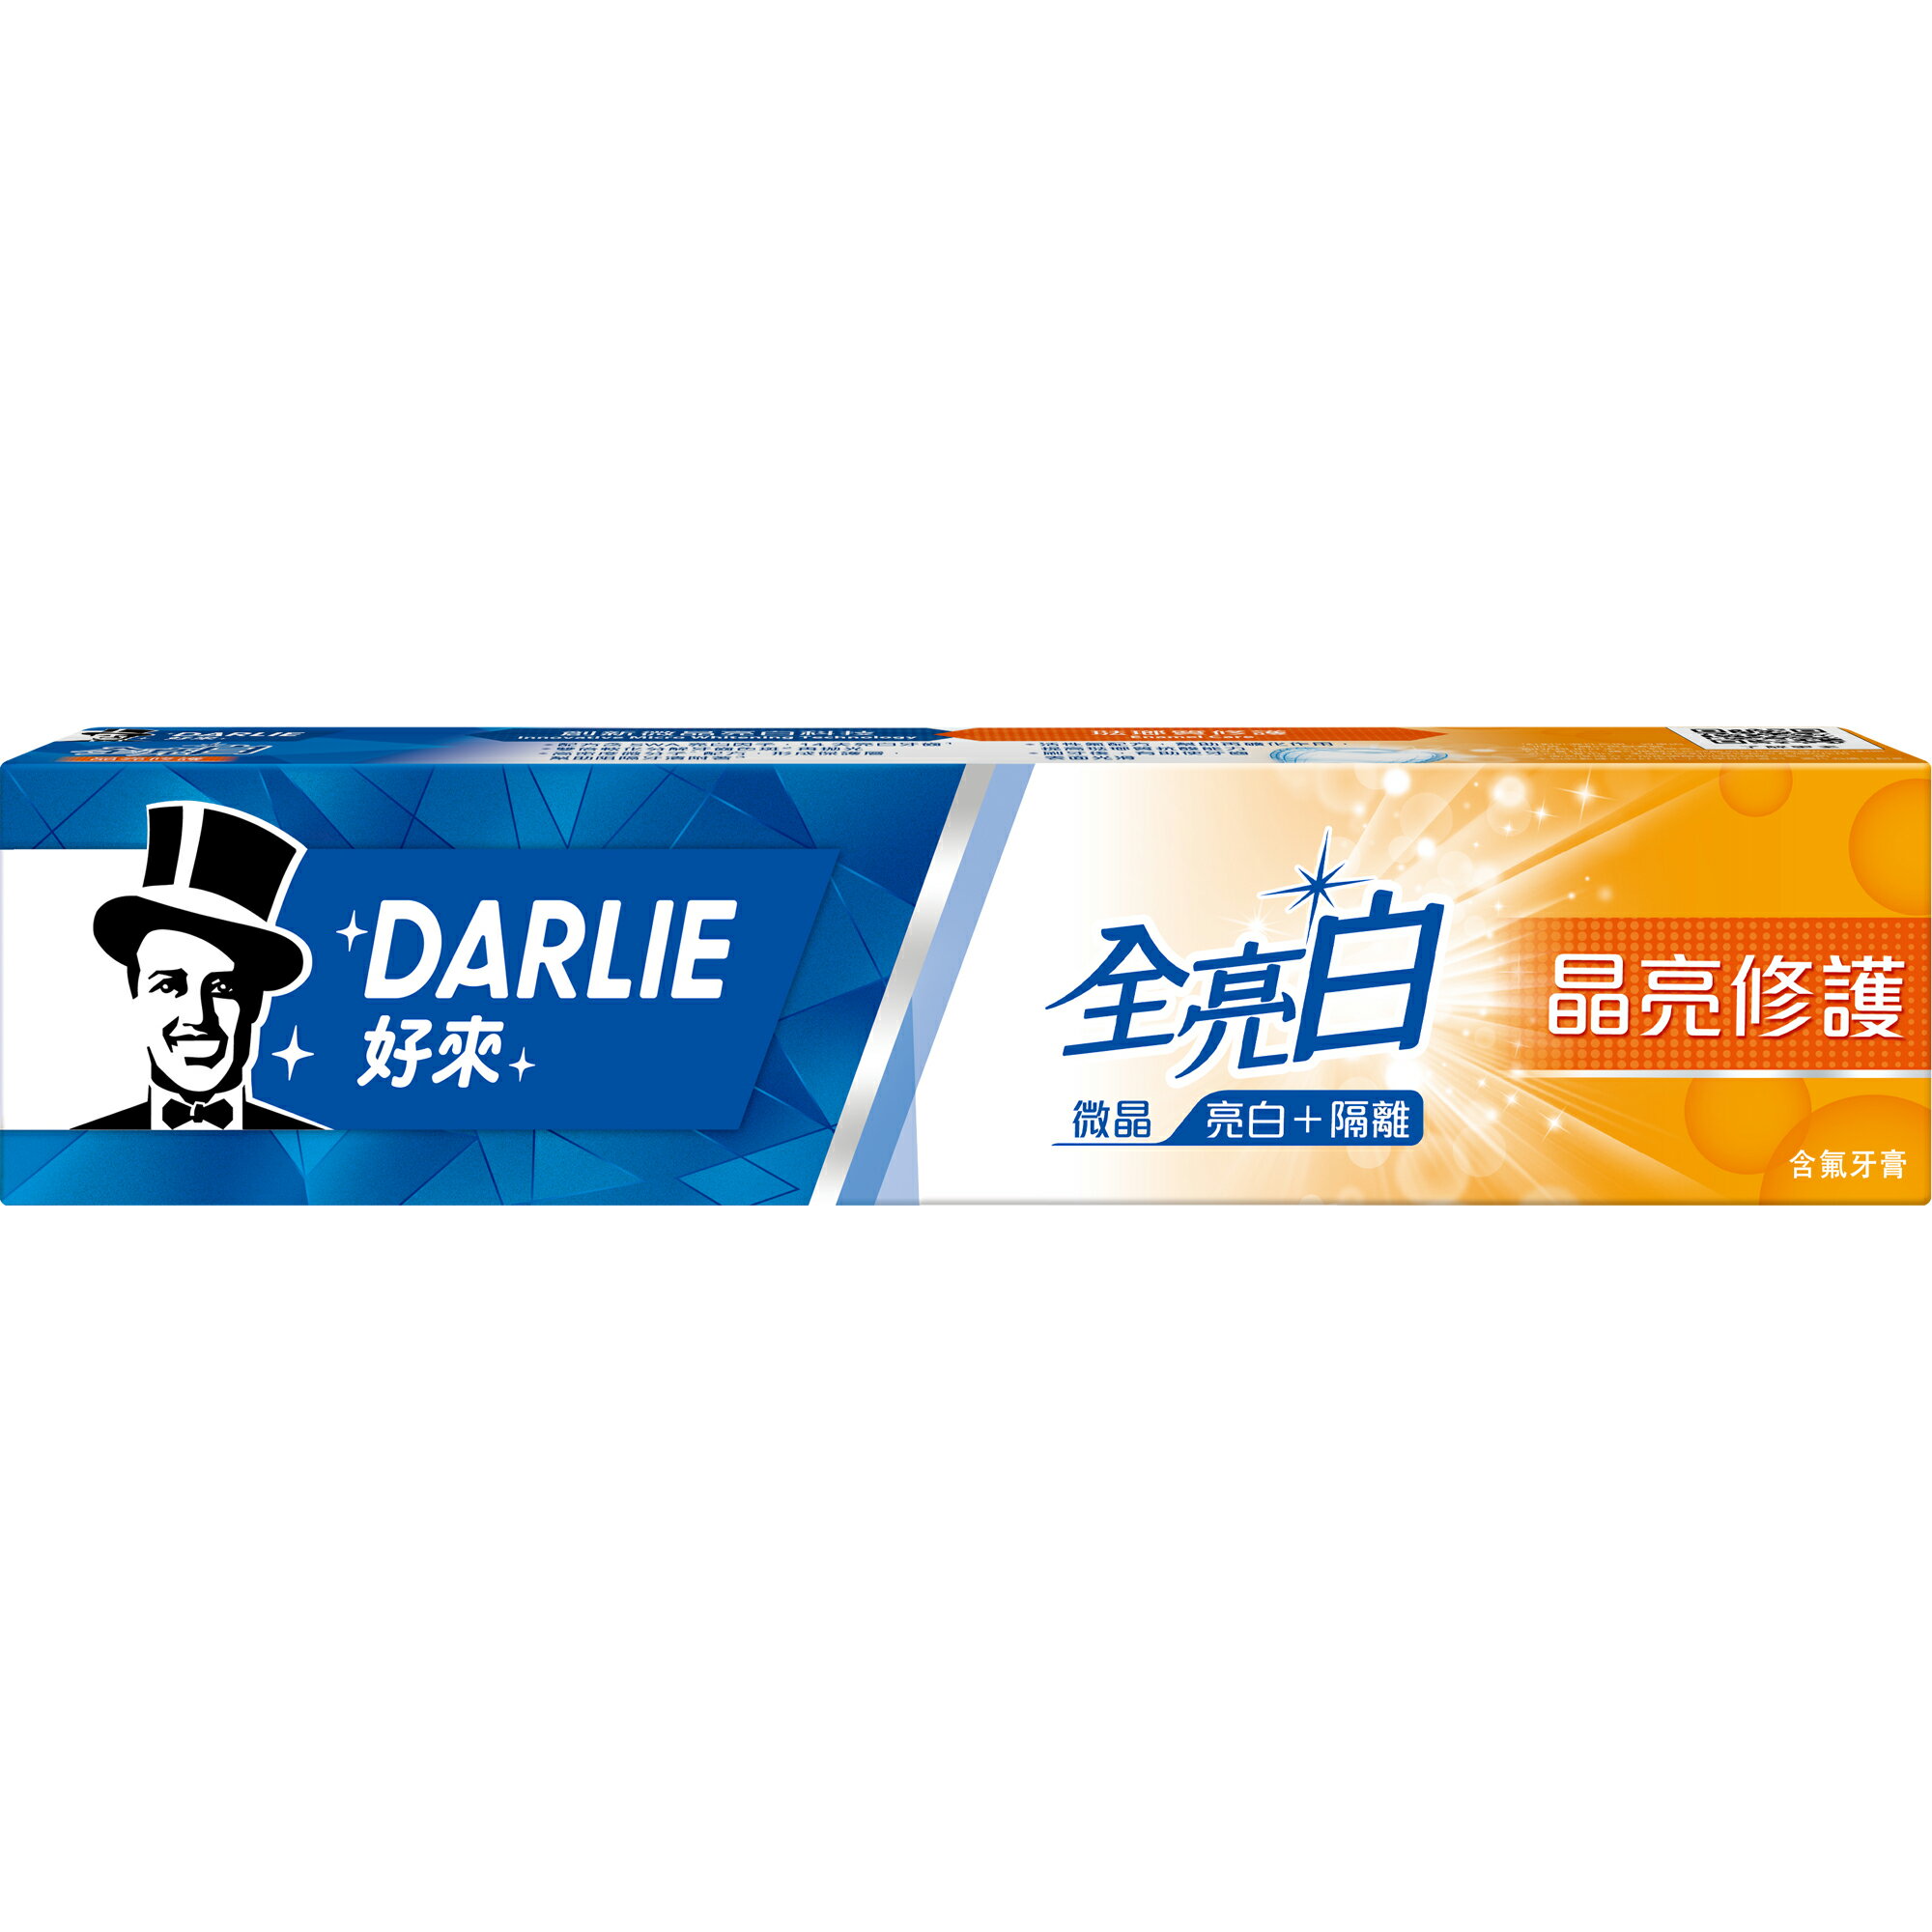 好來DARLIE 全亮白牙膏 晶亮修護 140g